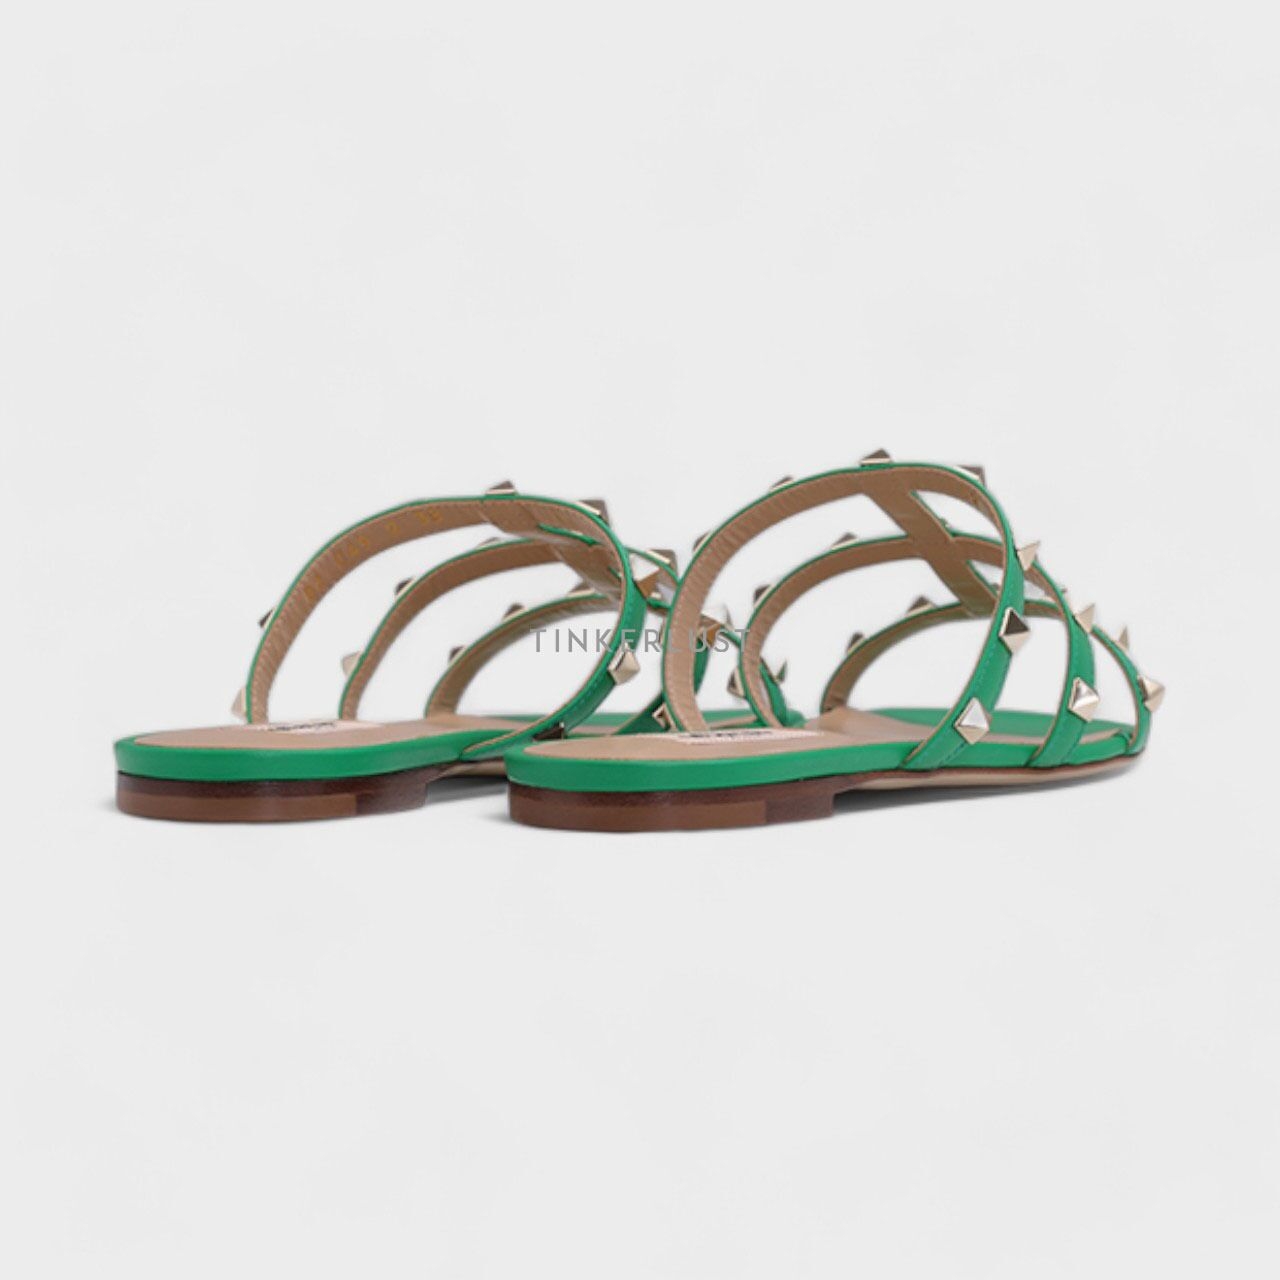 Valentino Garavani Rockstud Green Strappy Slides Sandals